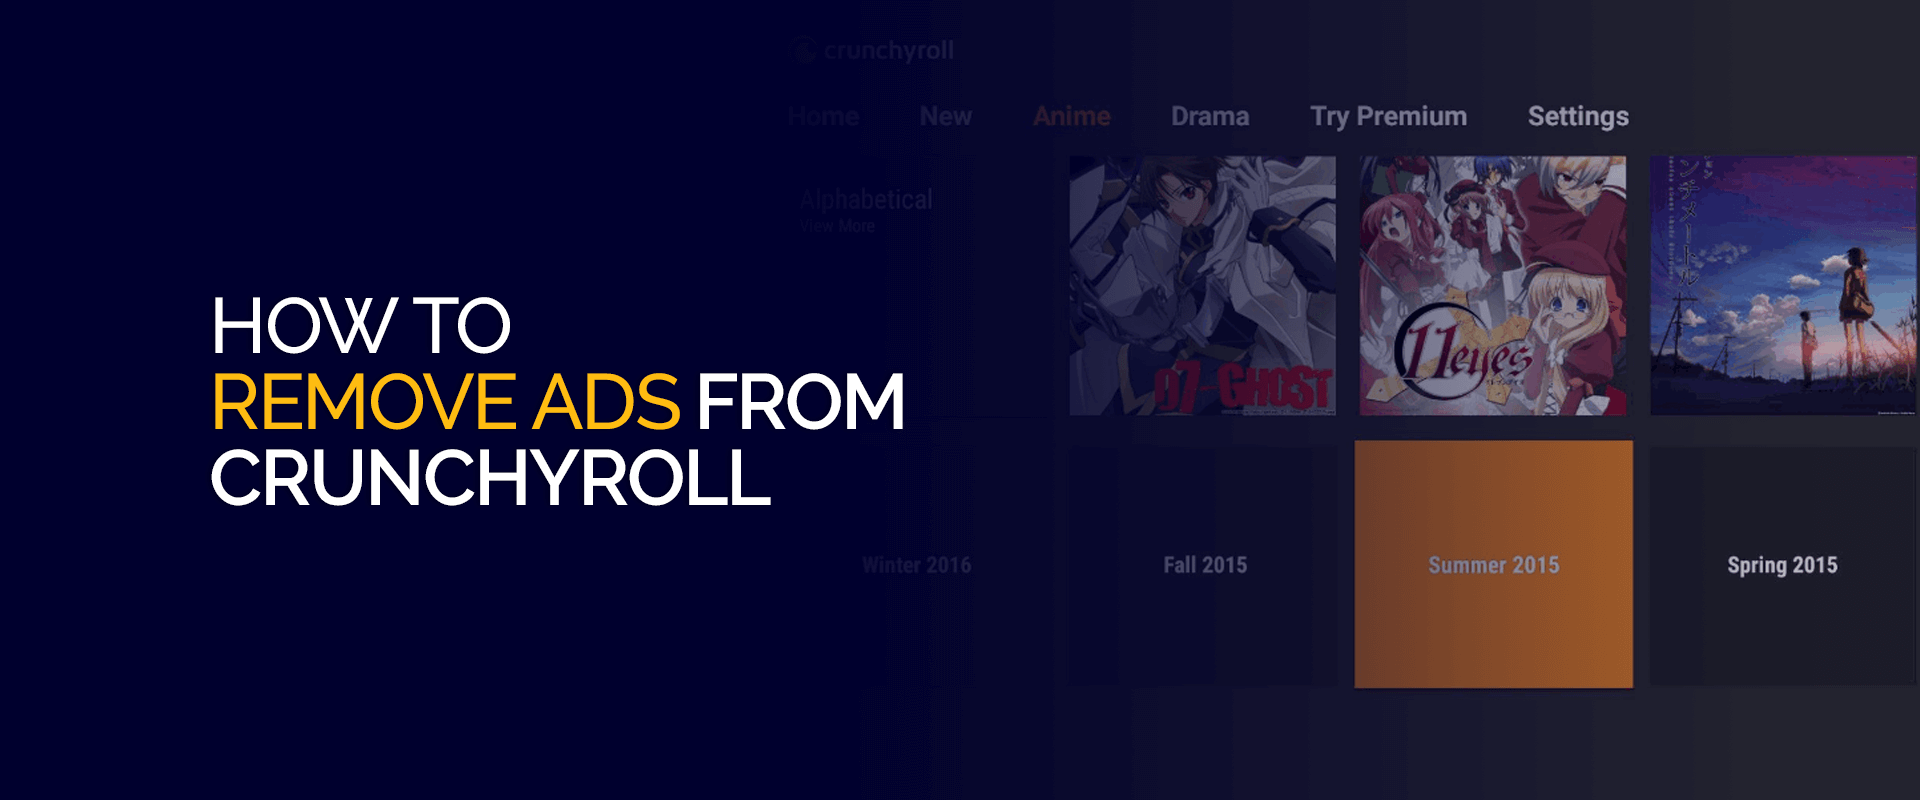 Como remover anúncios do Crunchyroll facilmente